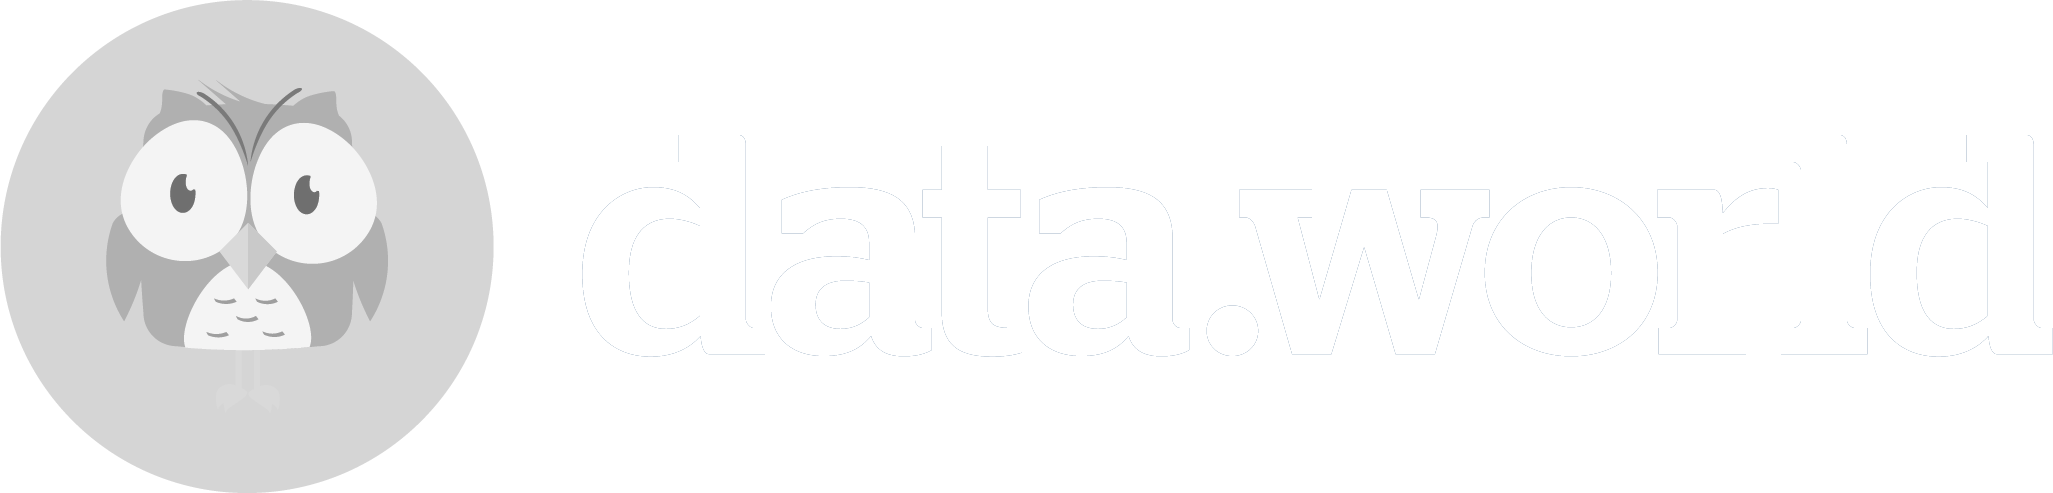 data-world-logo